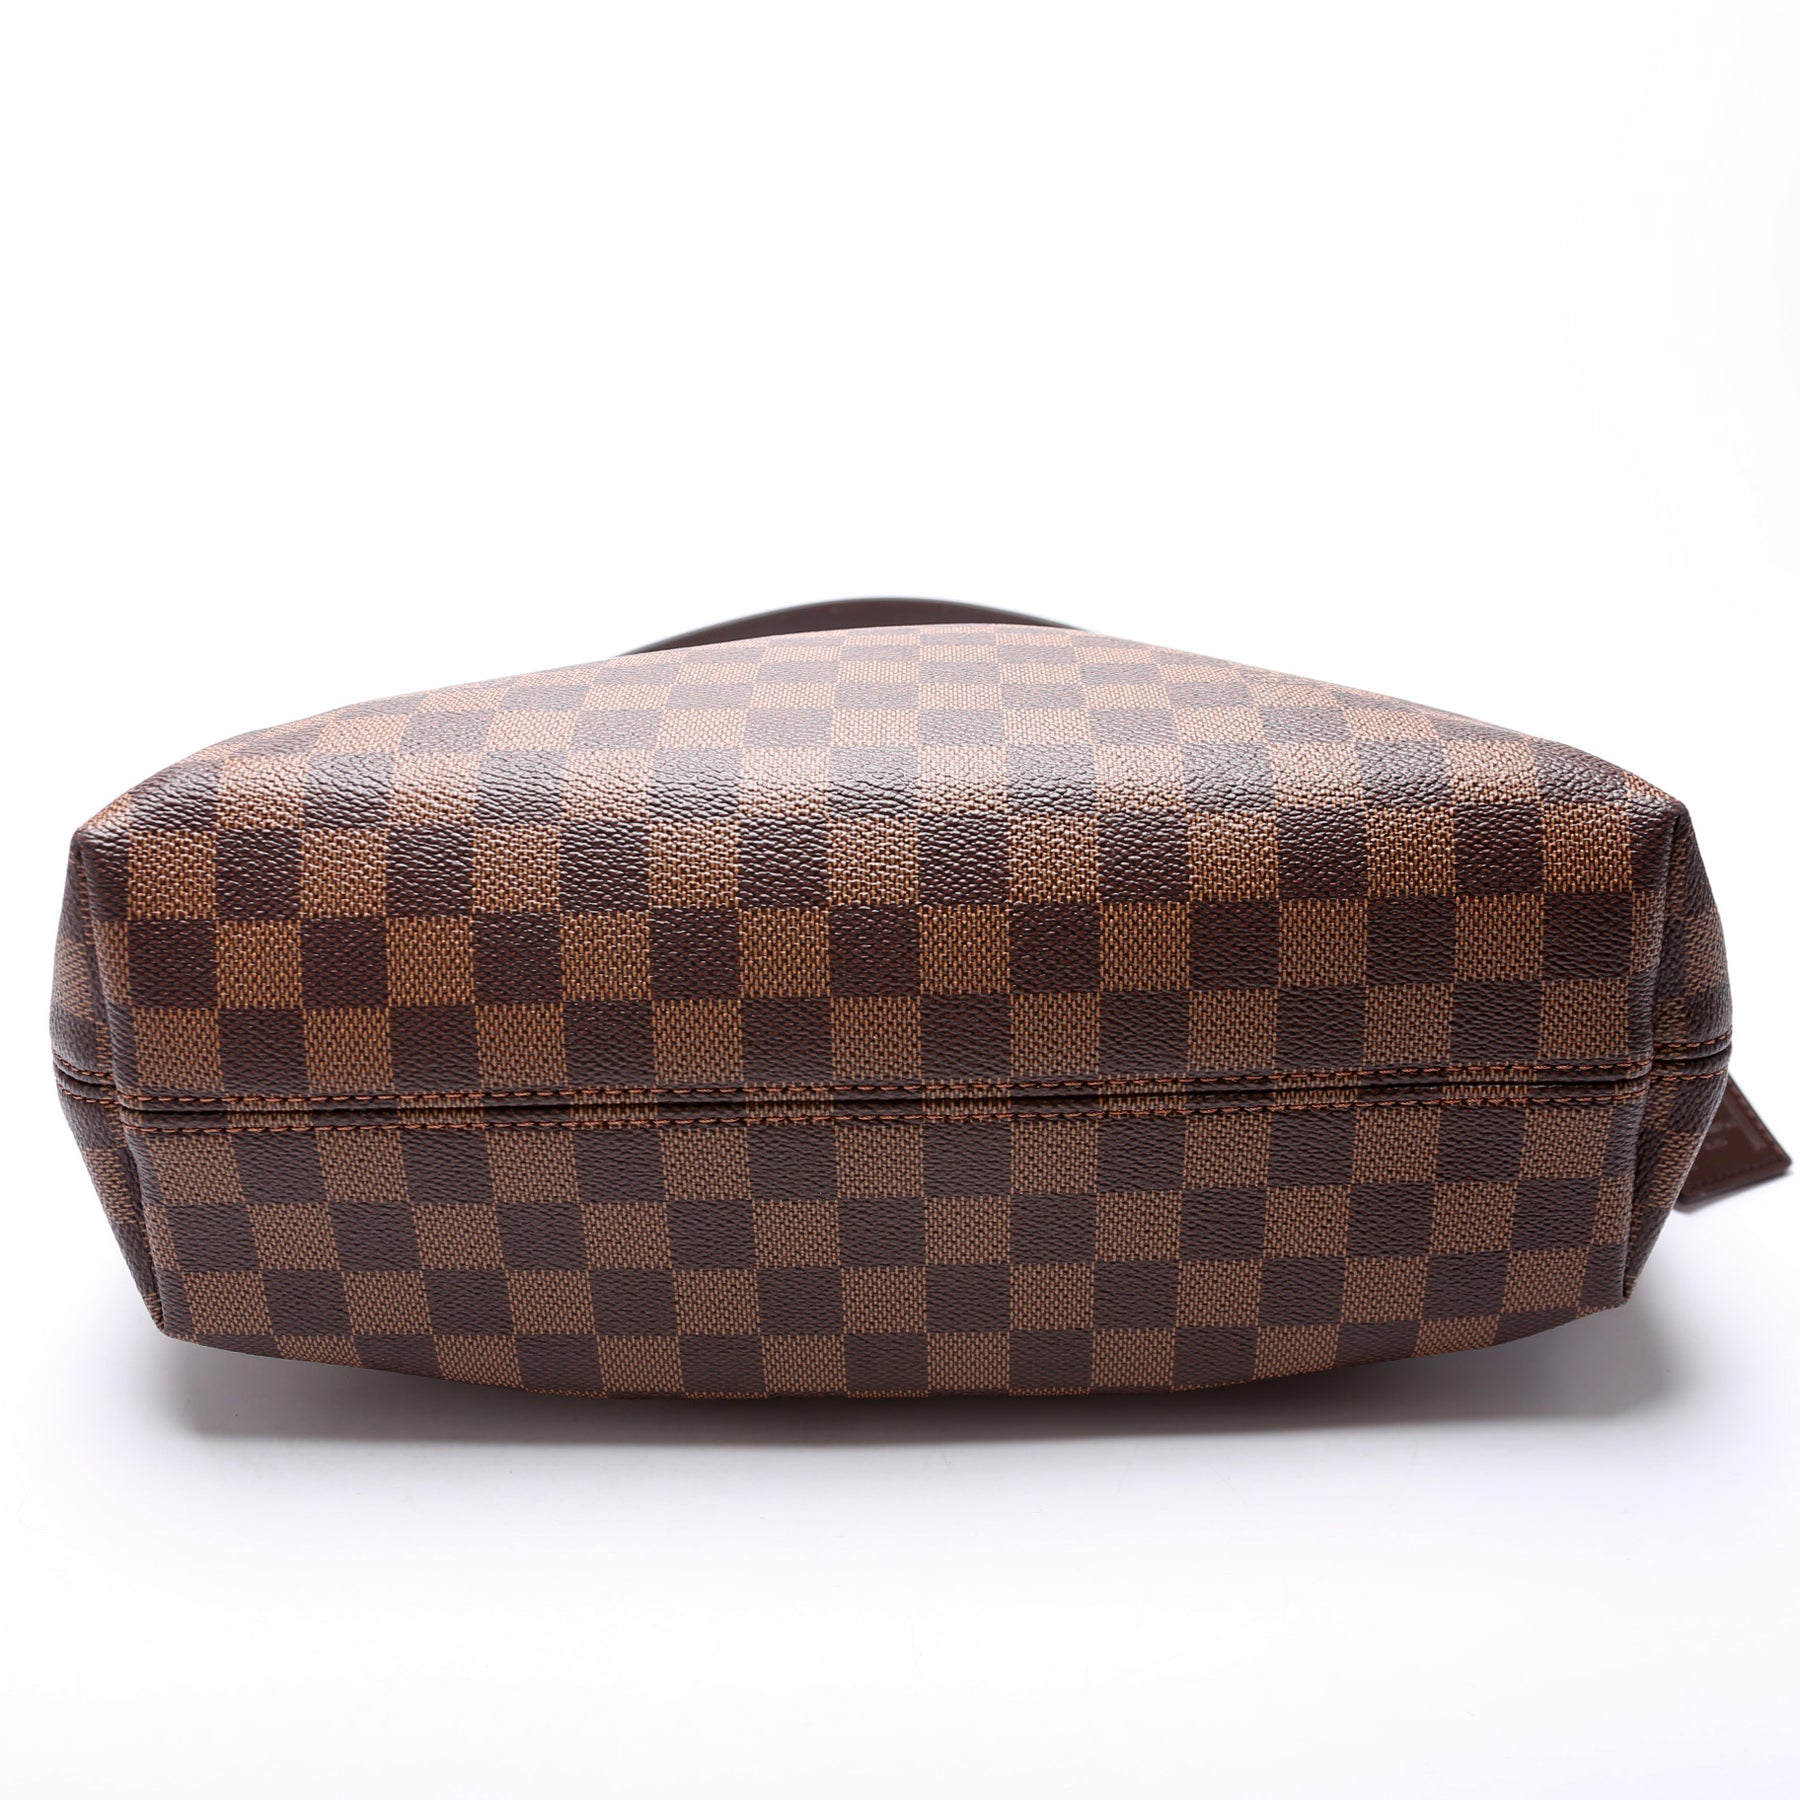 Graceful PM Damier Azur – Keeks Designer Handbags